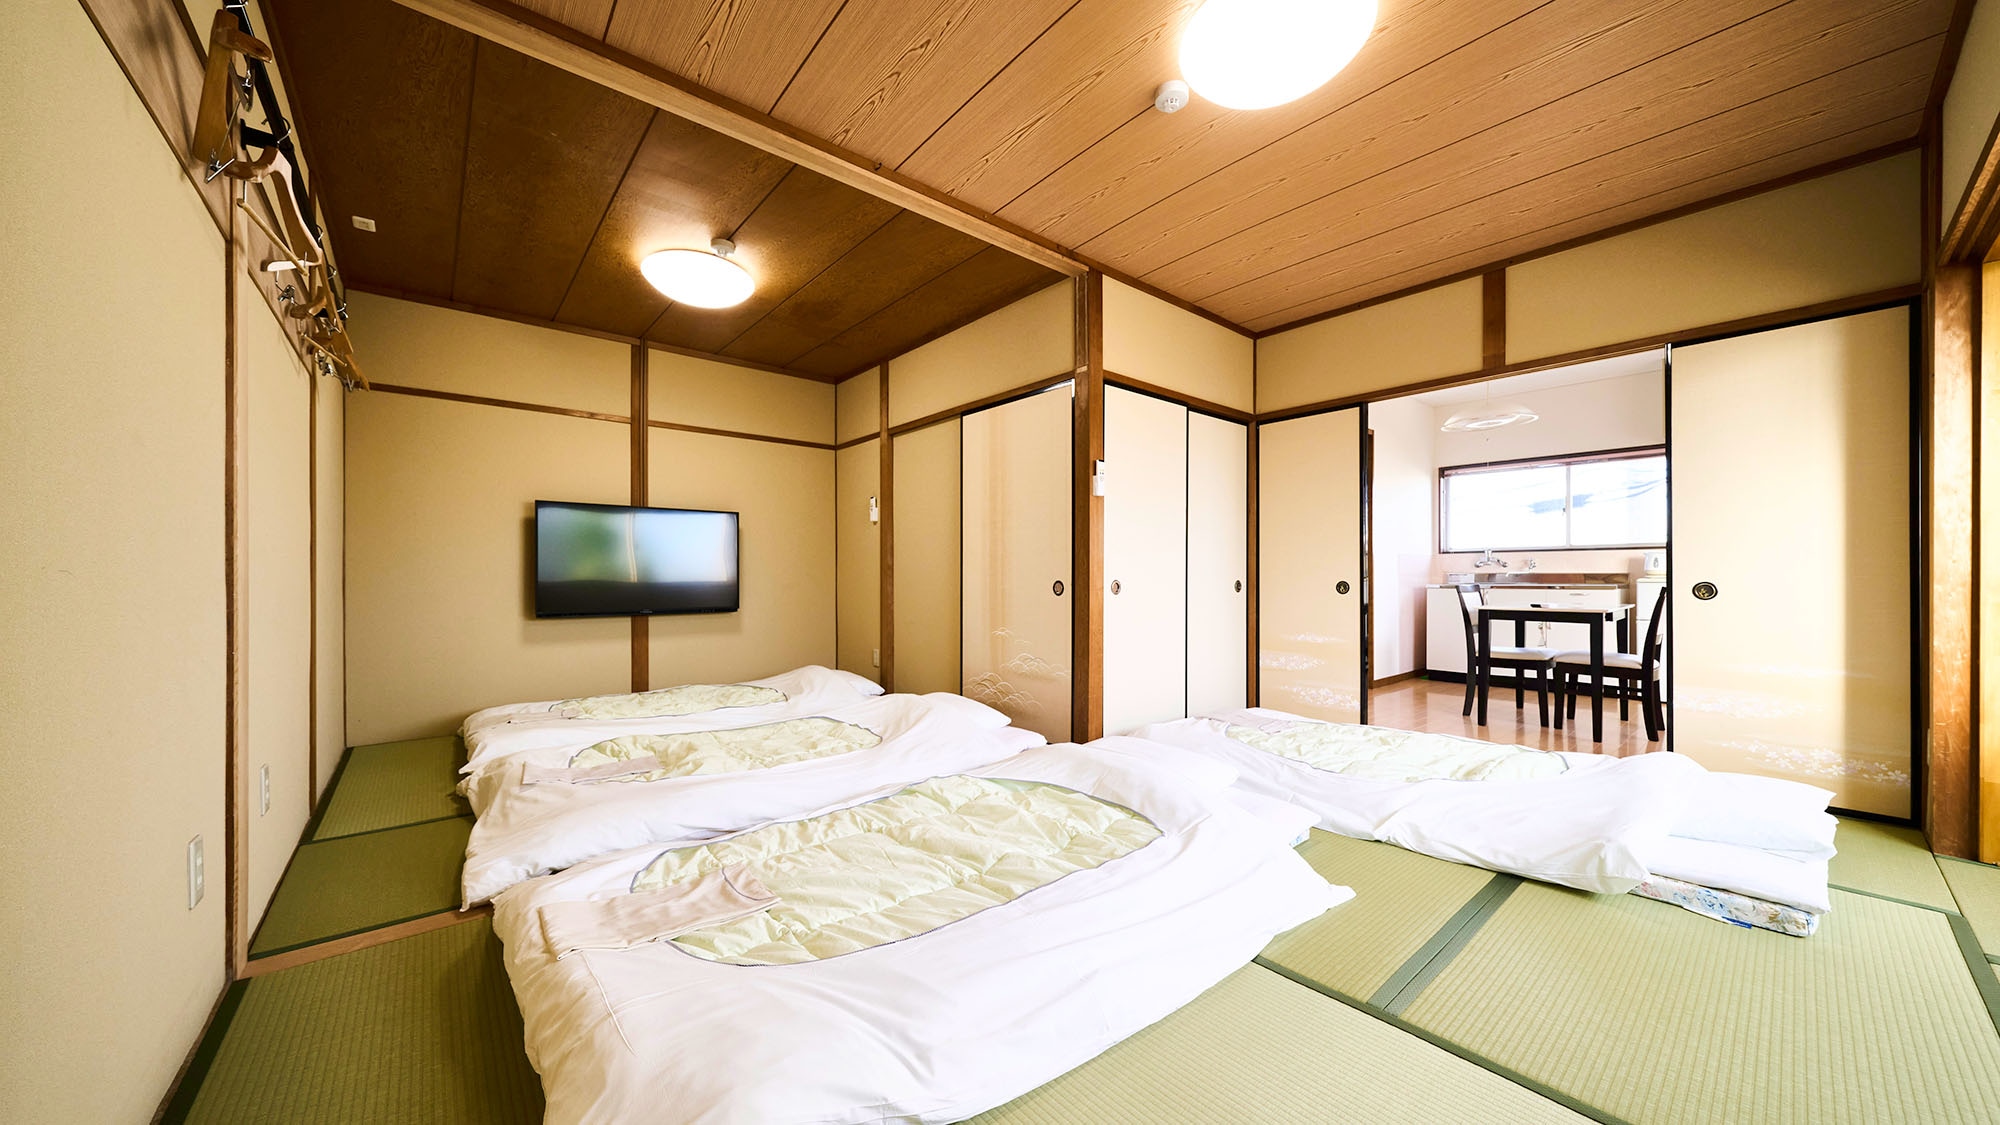 ・【일본식 S】최대 7명까지 숙박하실 수 있는 방입니다. 그룹 여행에서의 이용 등에 부디